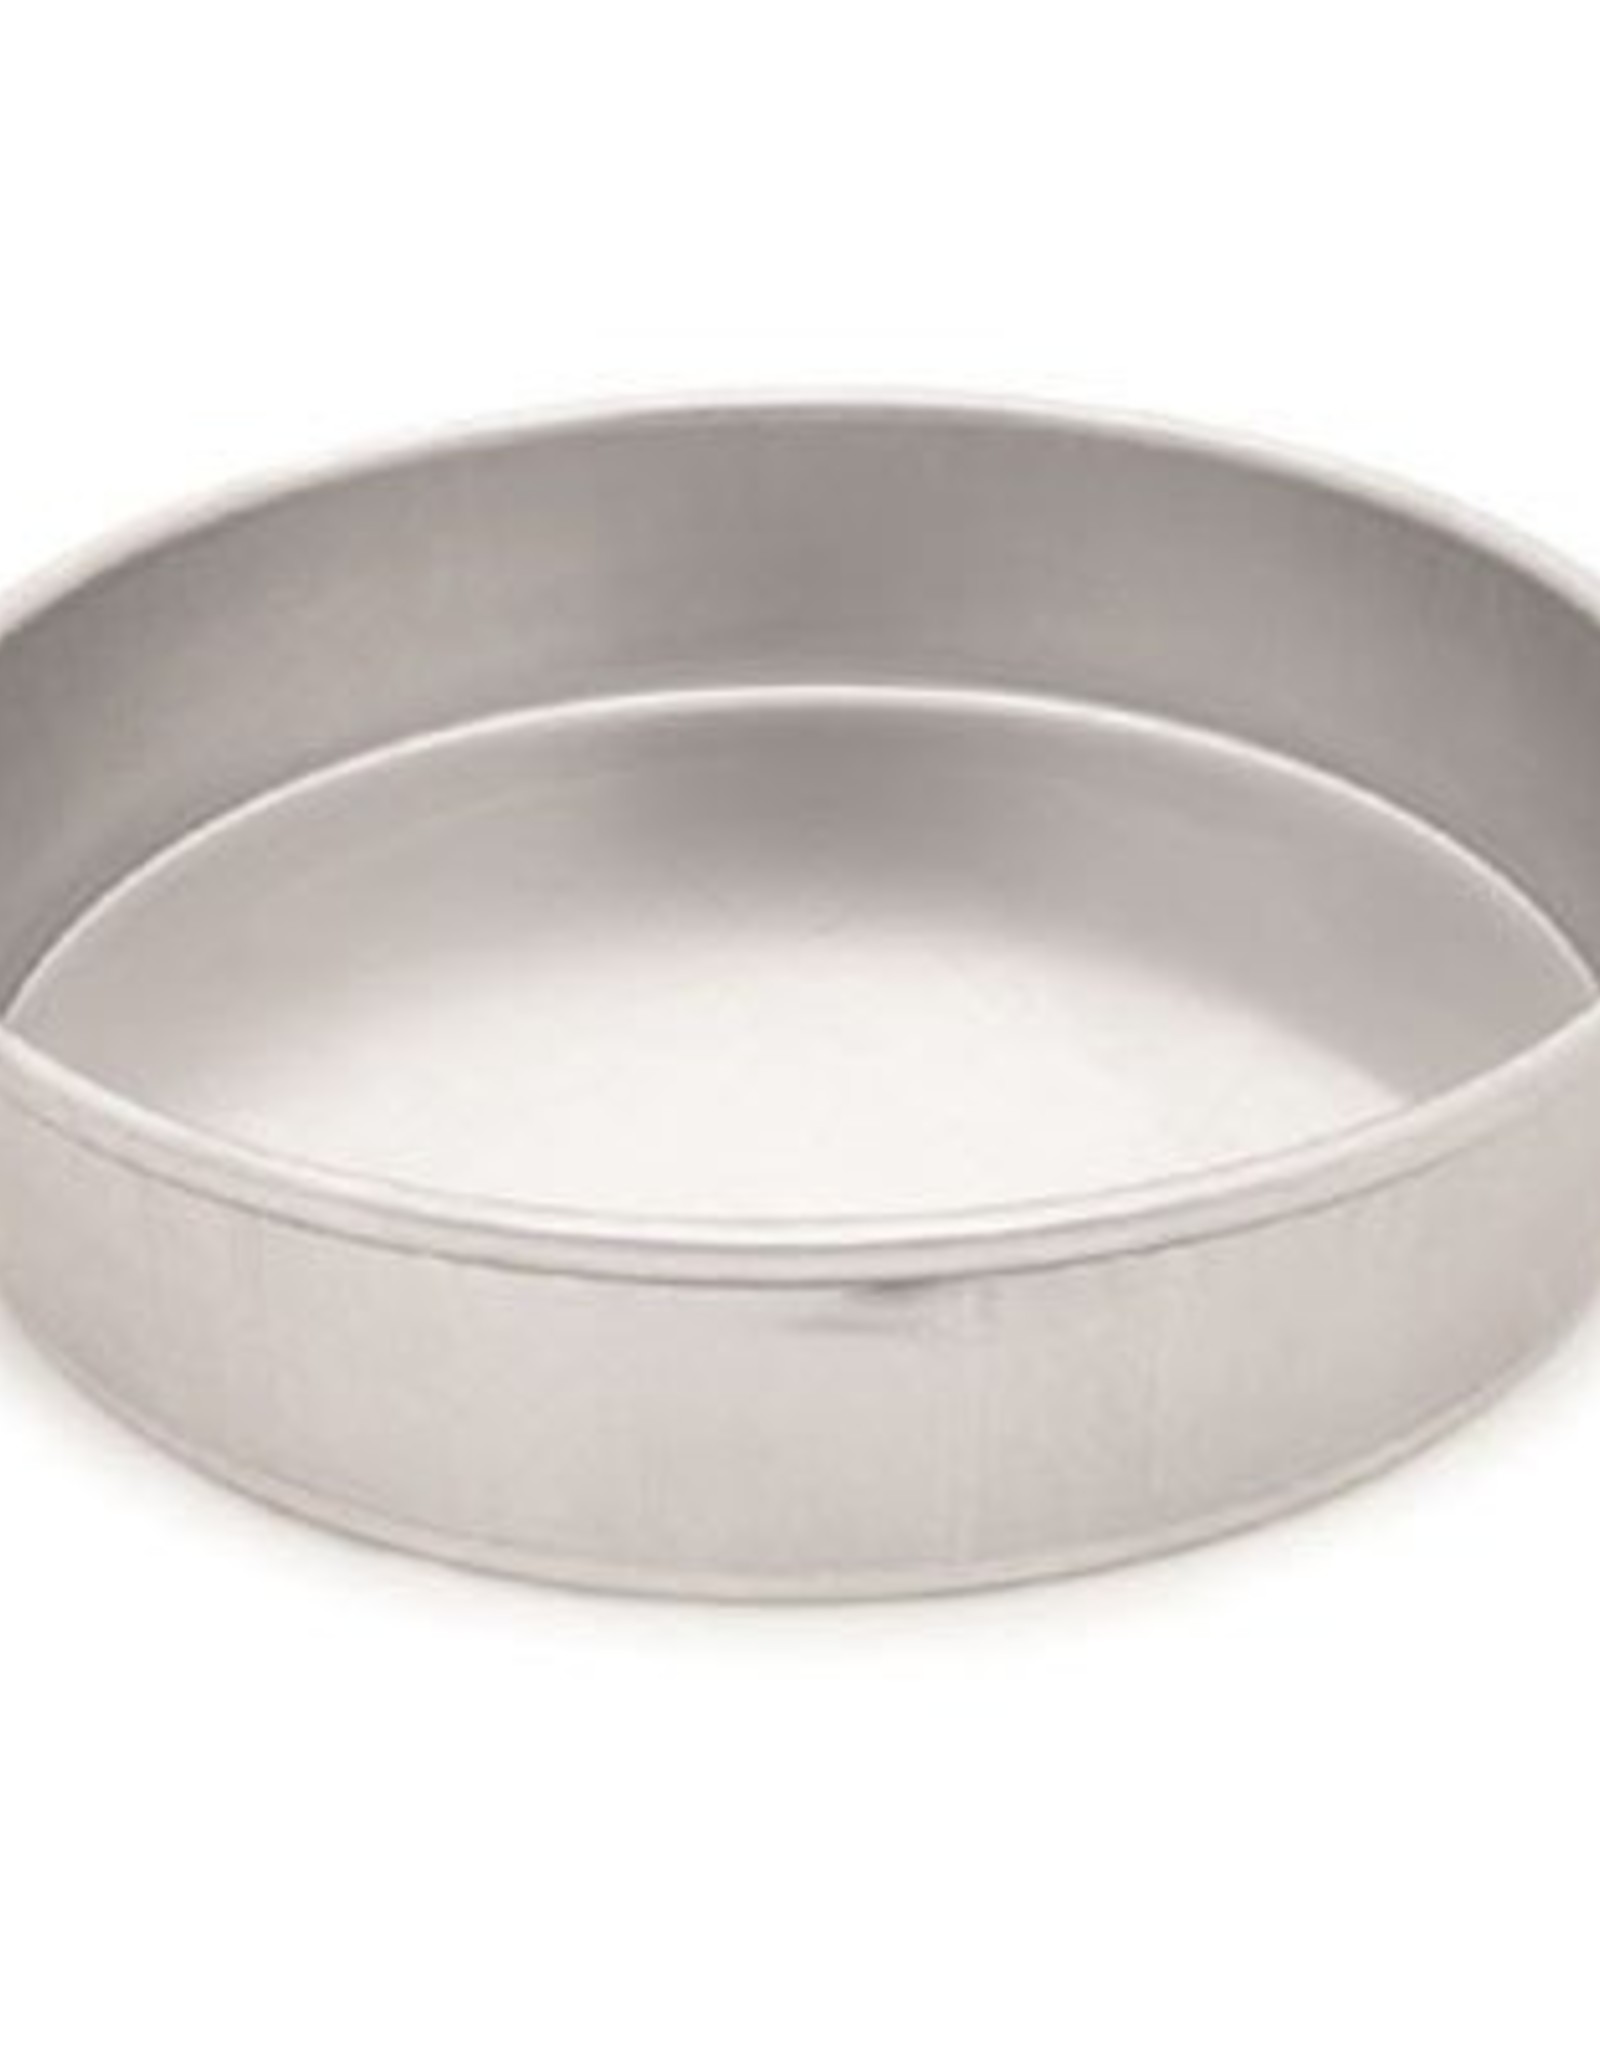 8" X 3" Round Baking Pan